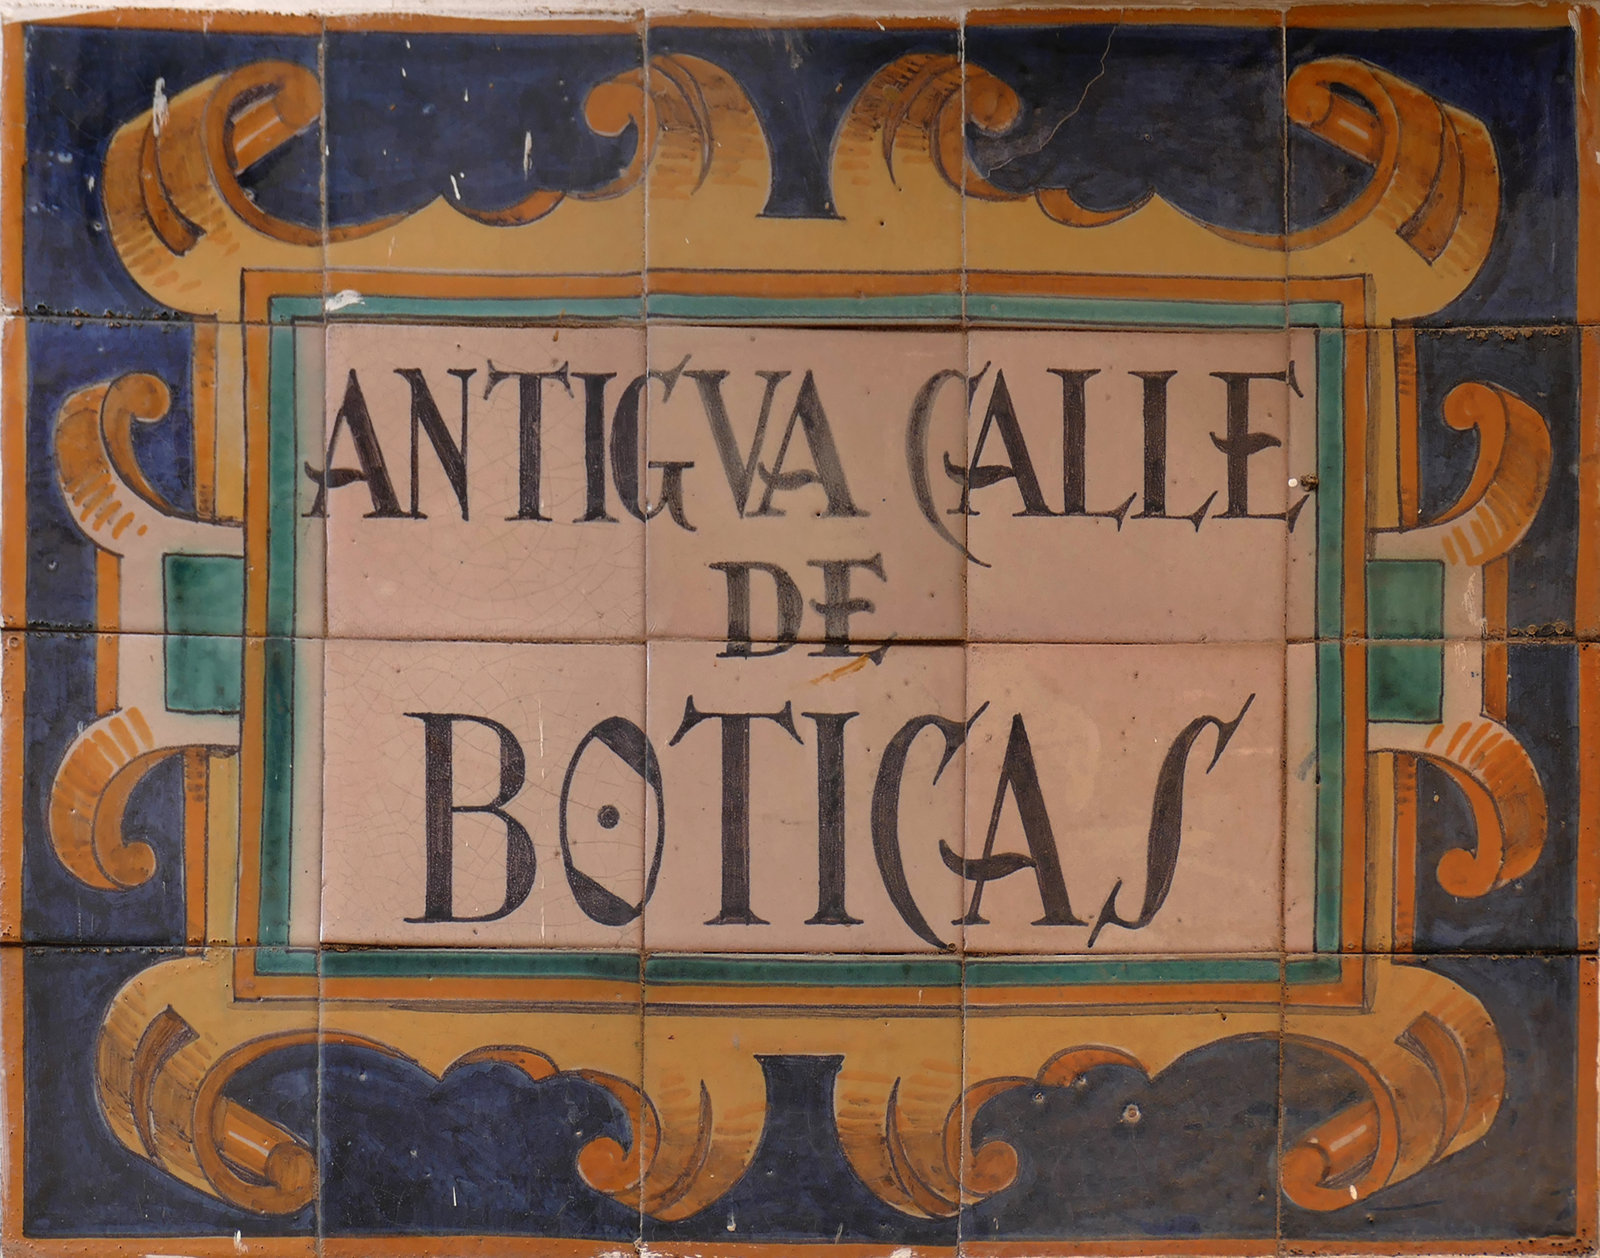 00977. Rótulo de la antigua calle de las Boticas. Sevilla.